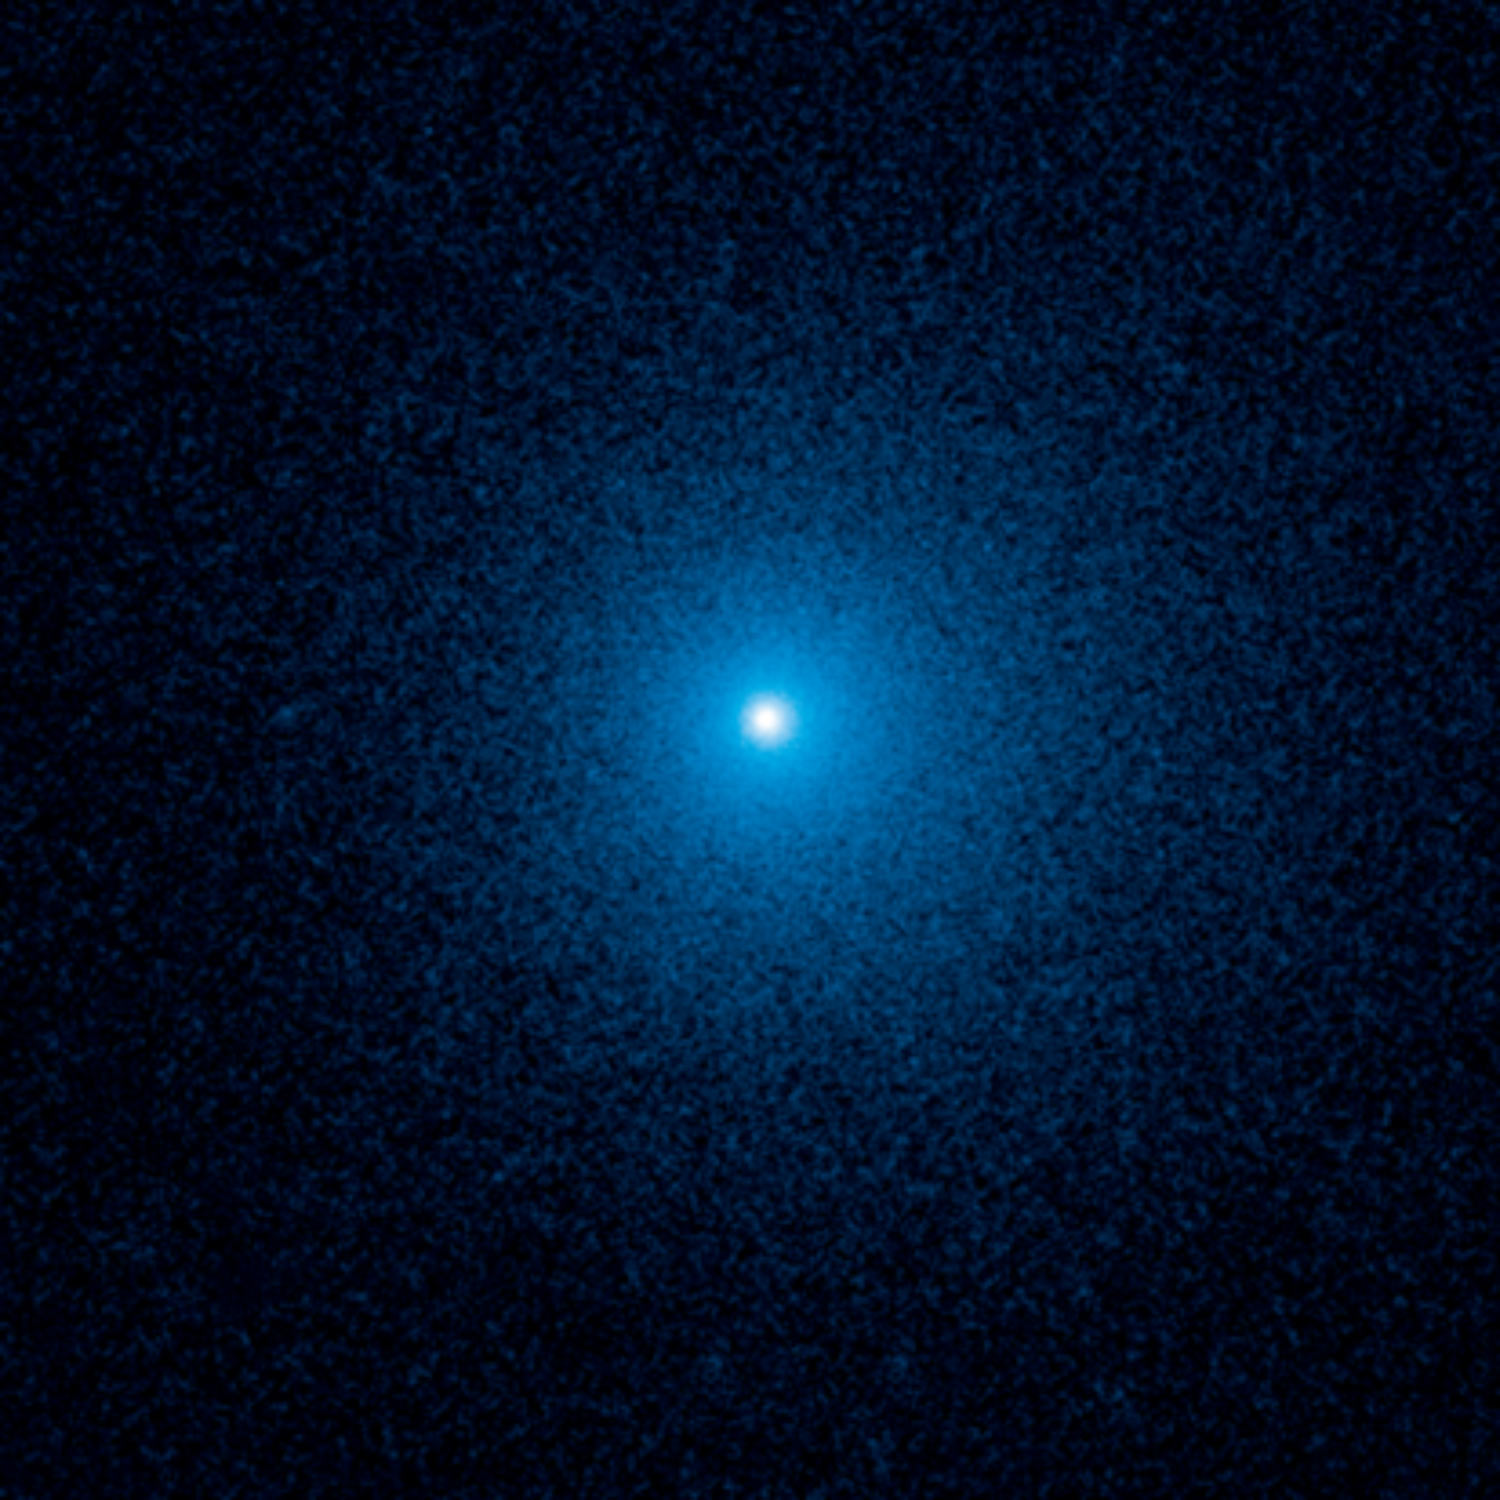 На этом снимке телескопа Hubble видна нечеткое облако пыли, окружающее комету C/2017 K2,